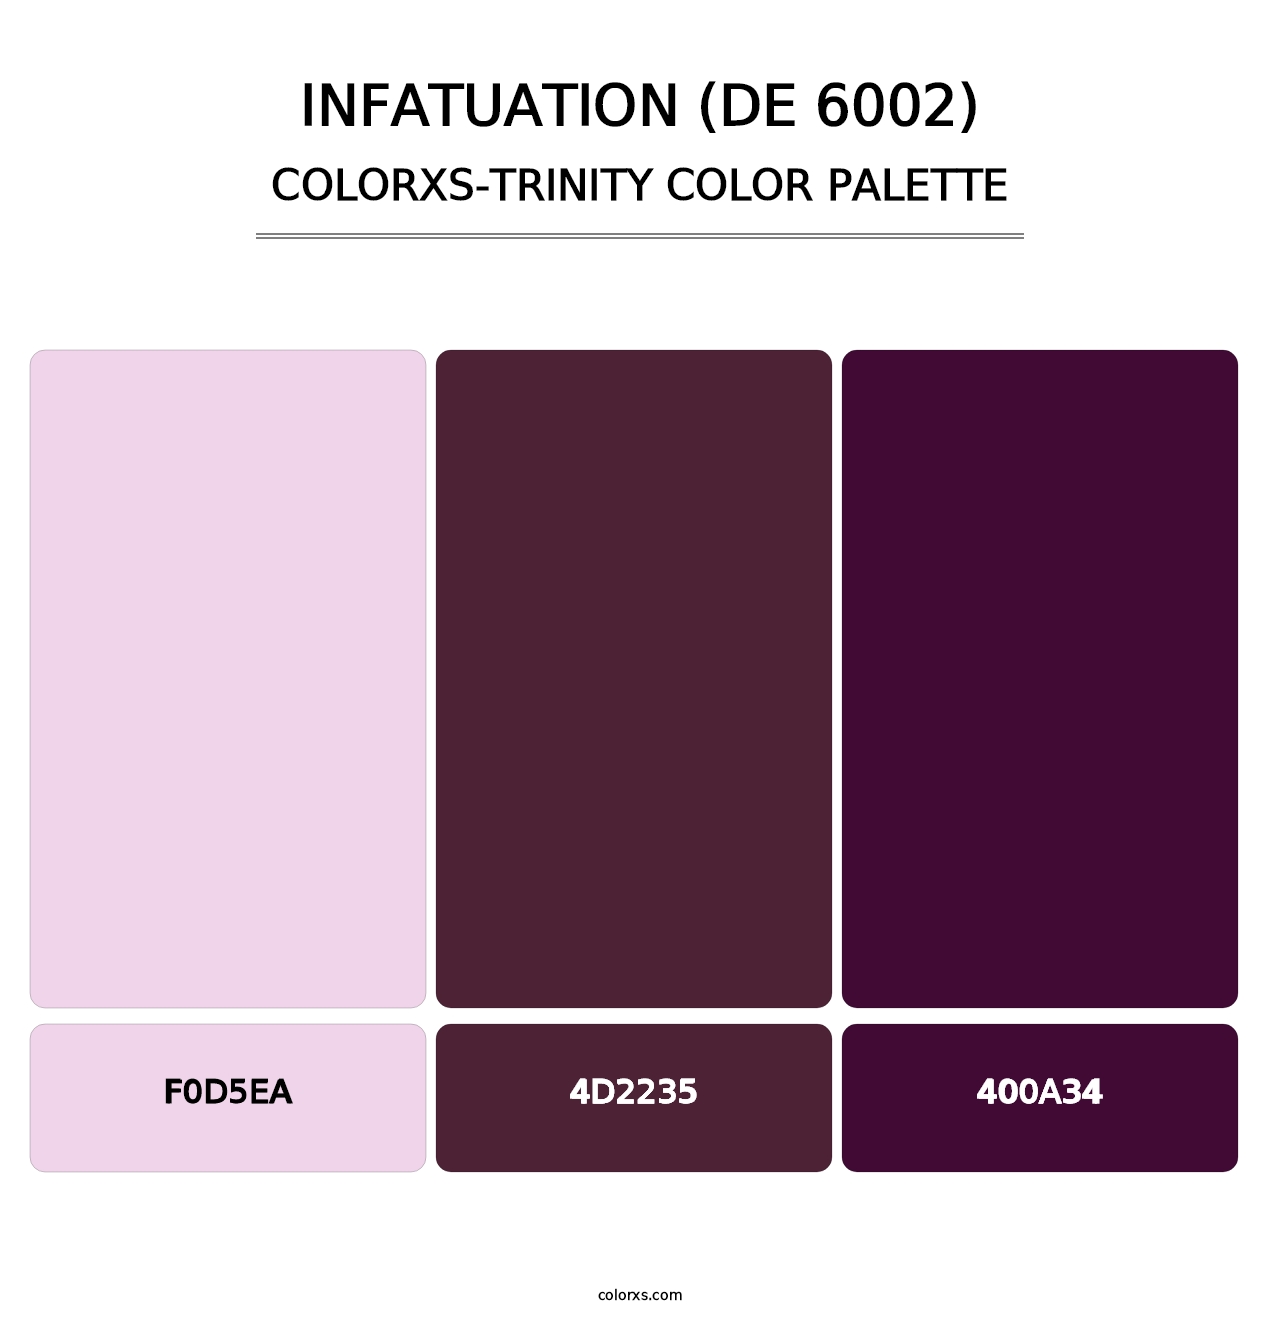 Infatuation (DE 6002) - Colorxs Trinity Palette